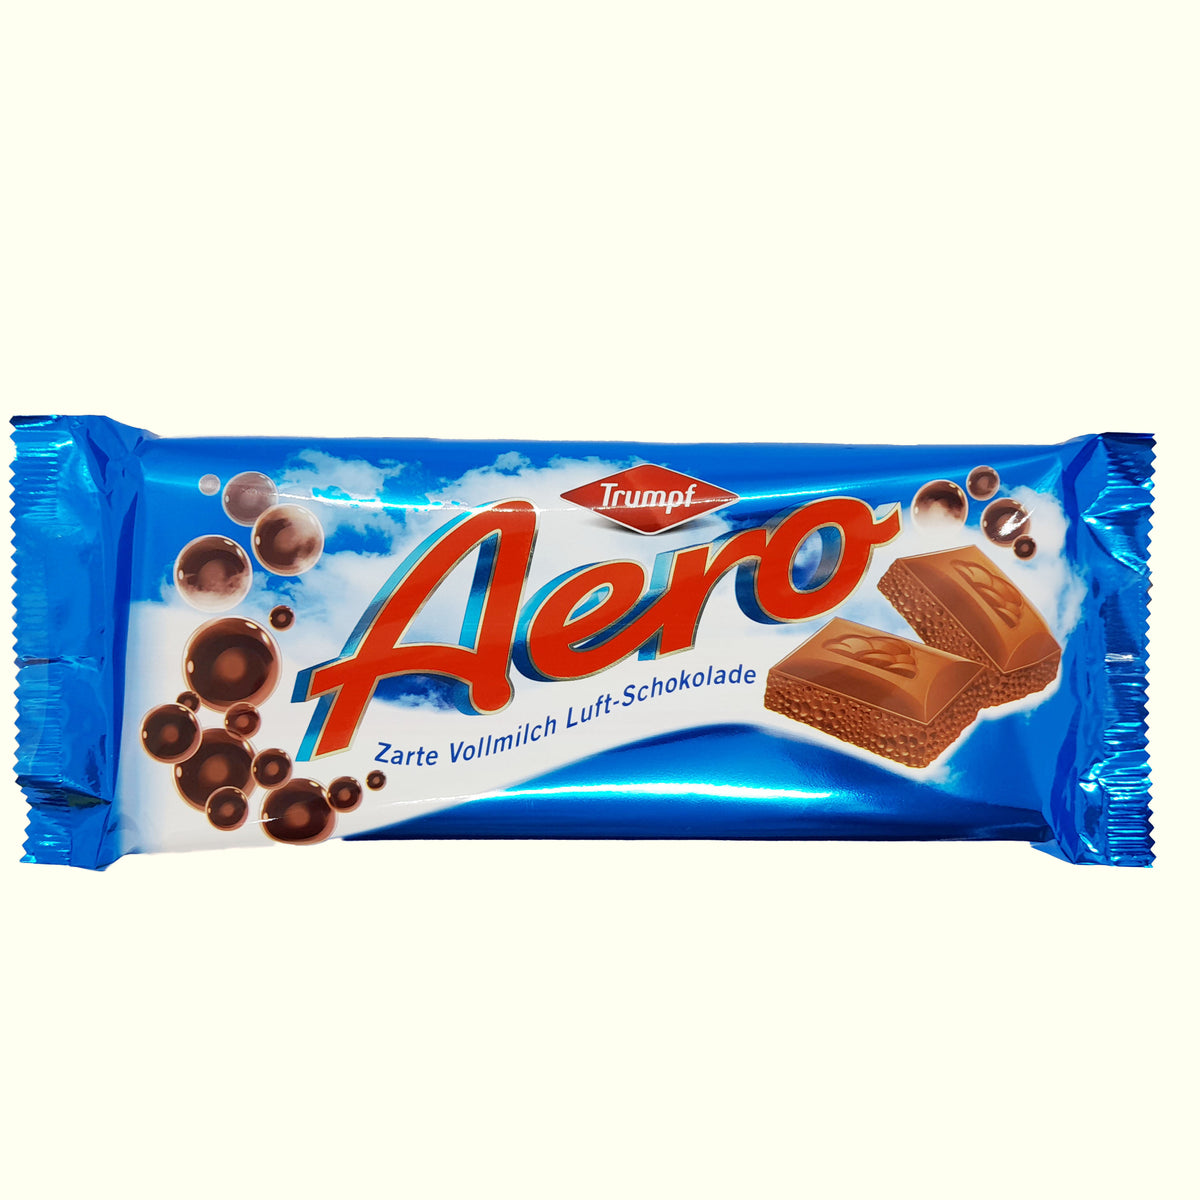 Trumpf Aero Zarte Vollmilch Luft- Schokolade 100g